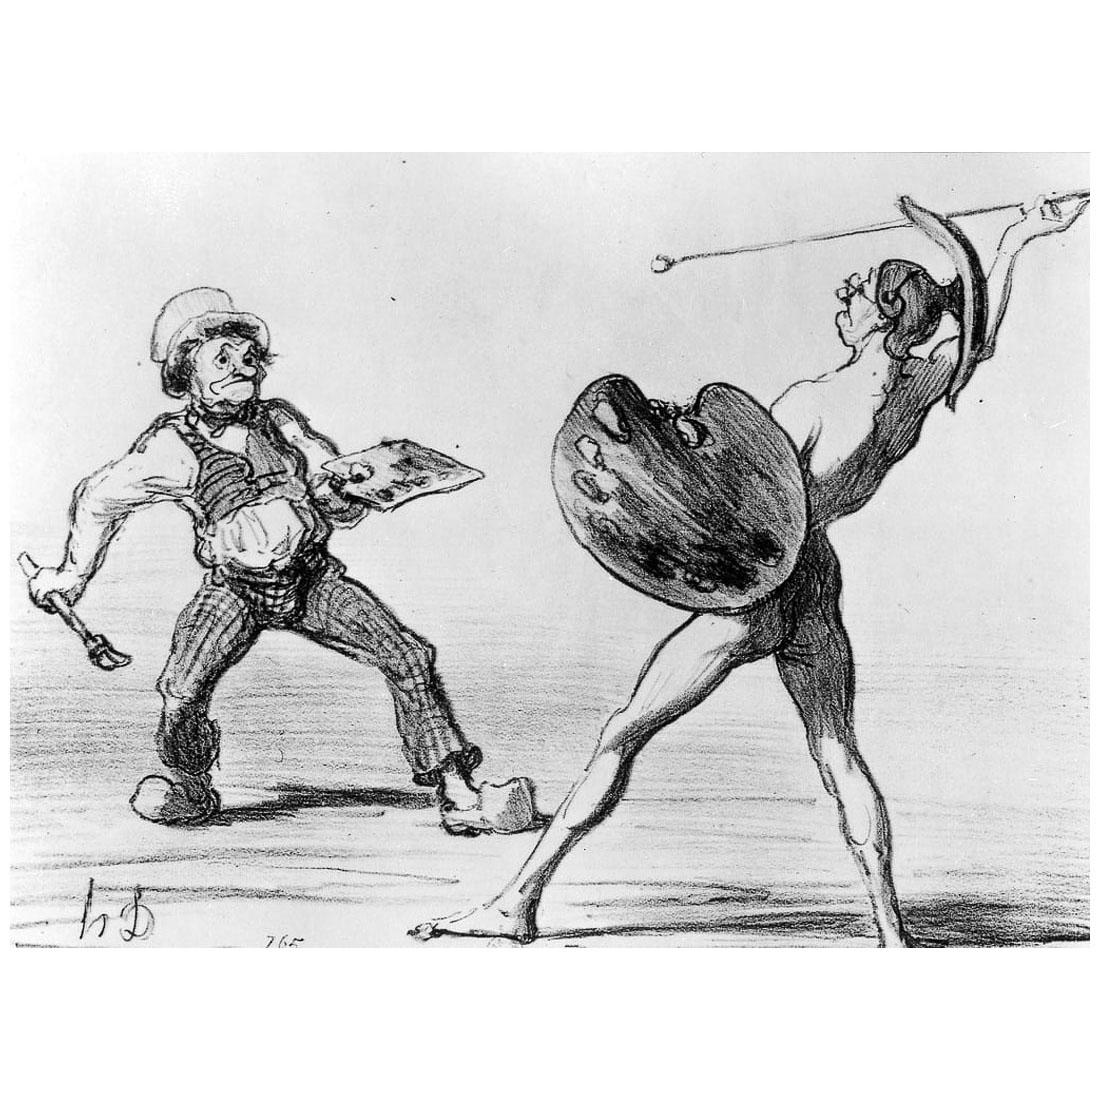 Honore Daumier. Bataille entre Idéalisme et Réalisme. 1850. Lithographie